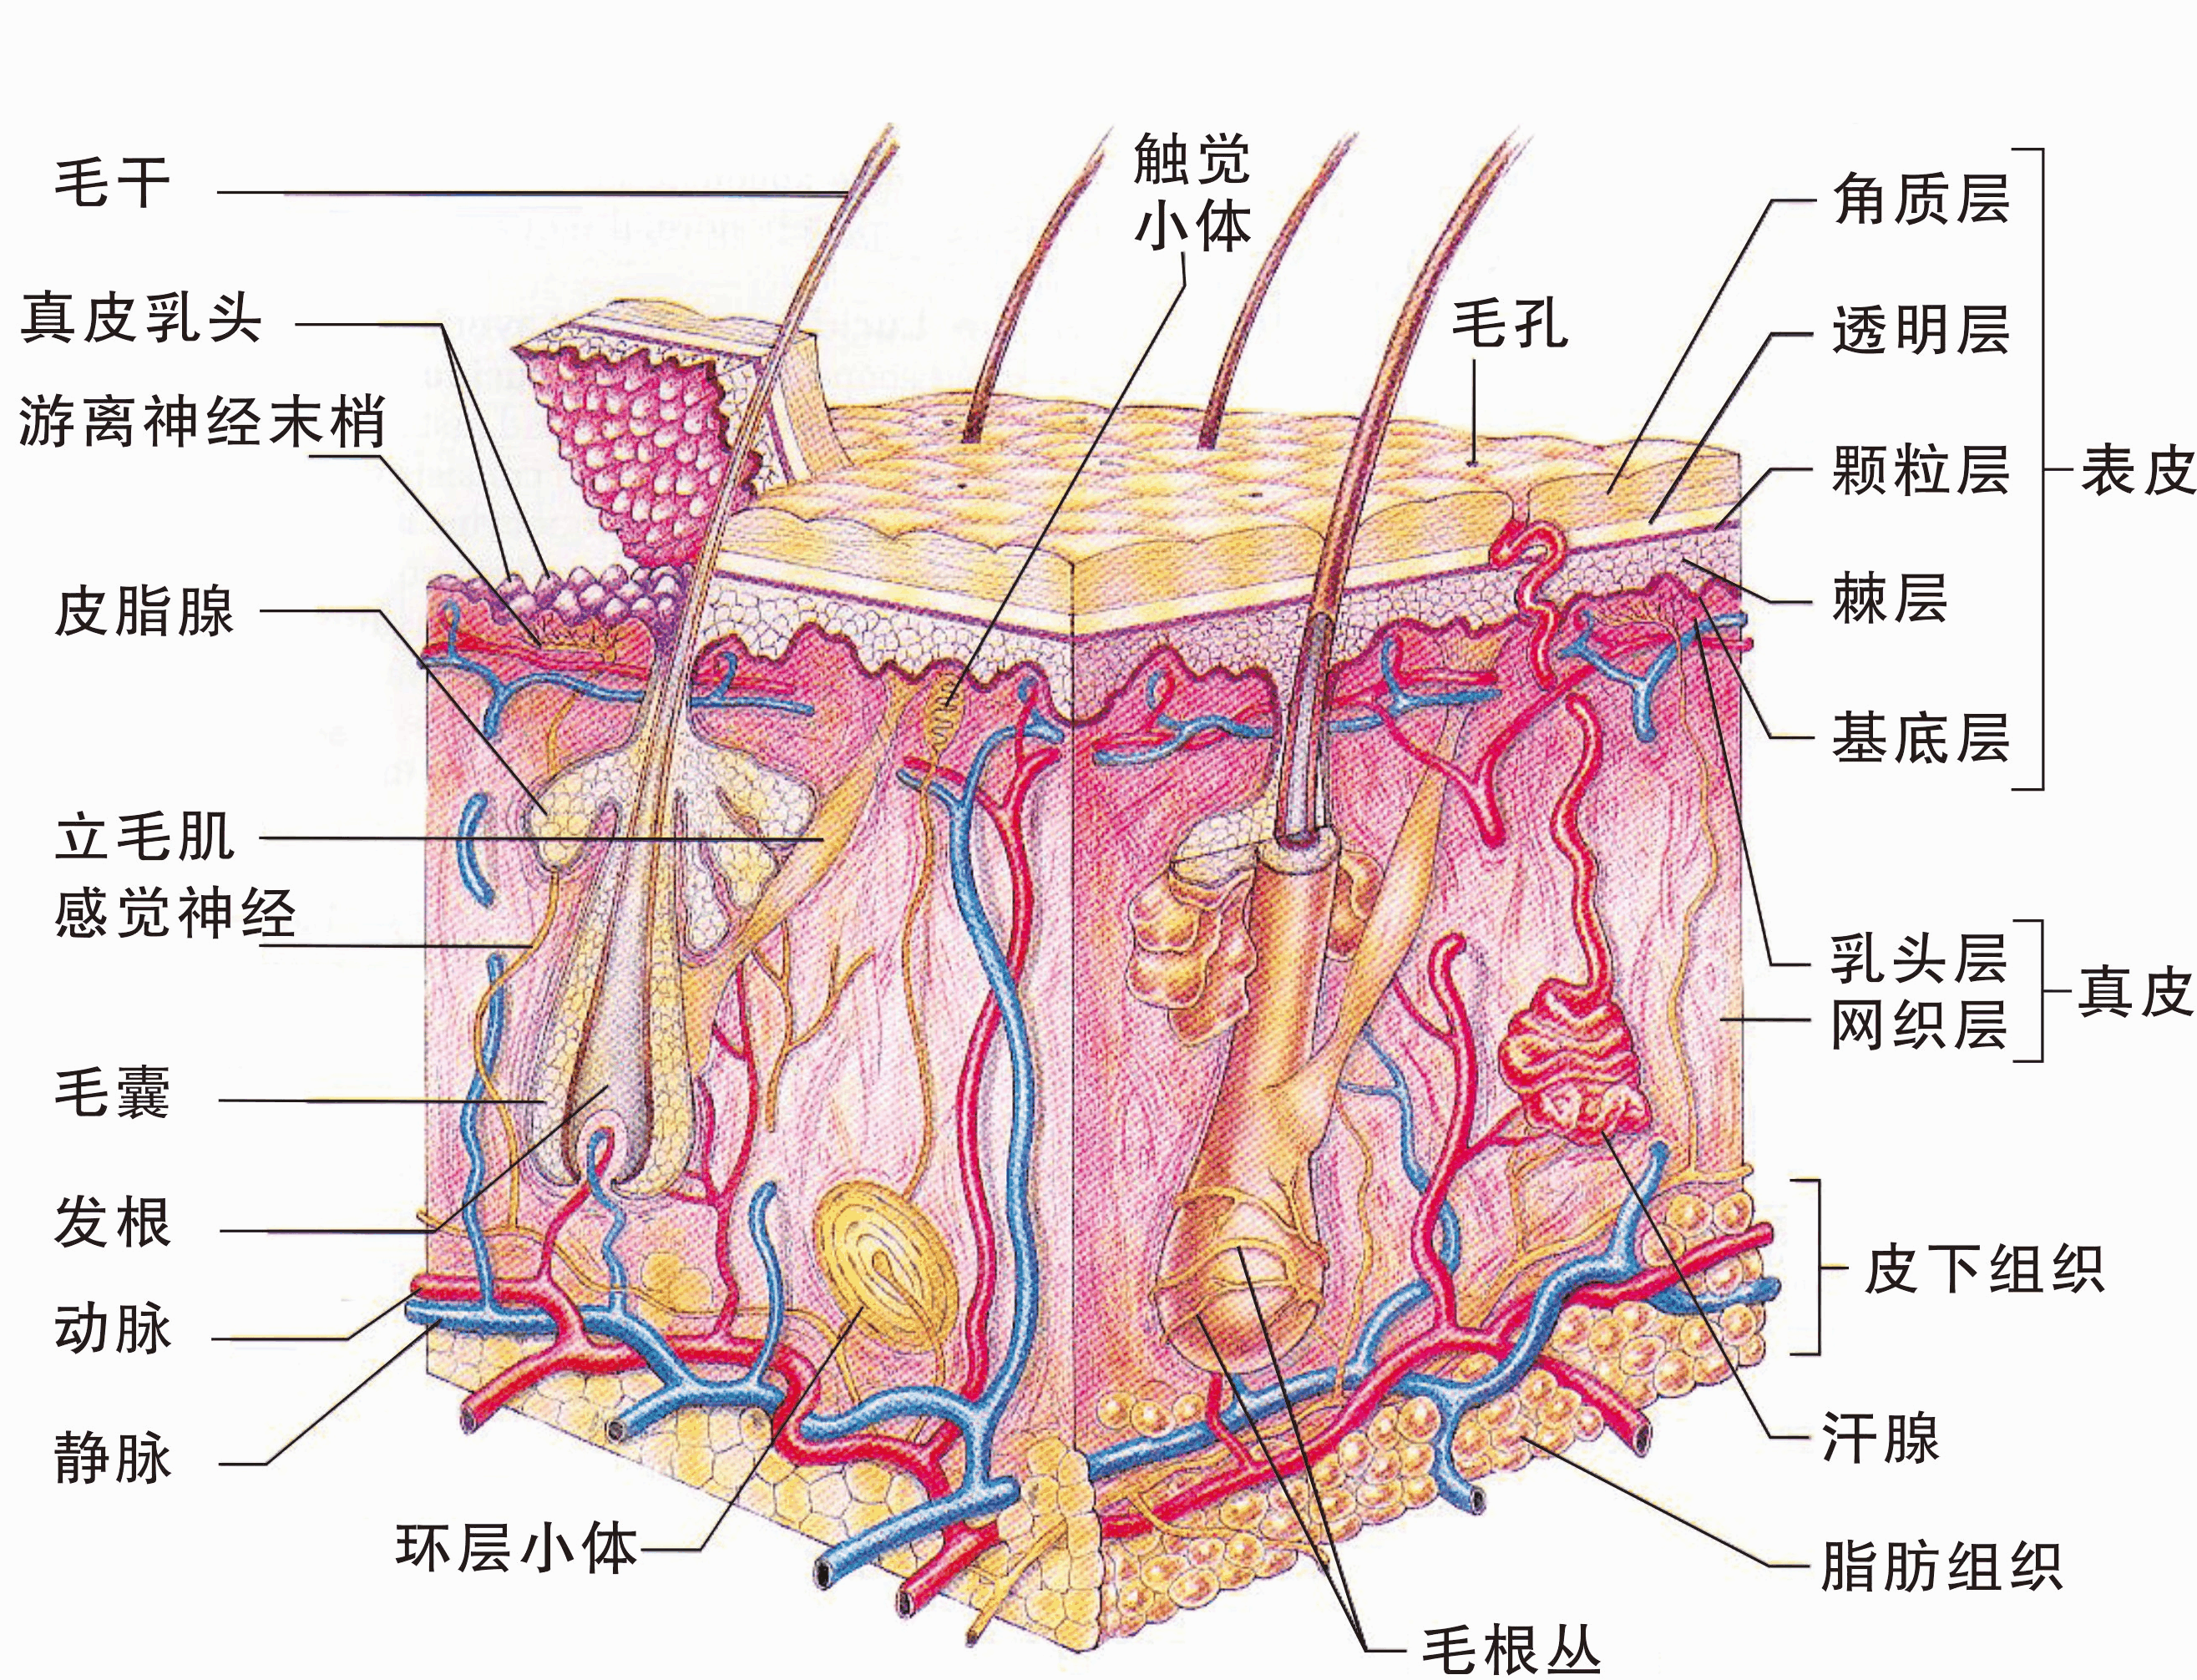 皮肤由表皮,真皮和皮下组织构成,表皮和真皮之间由基底膜带相连接